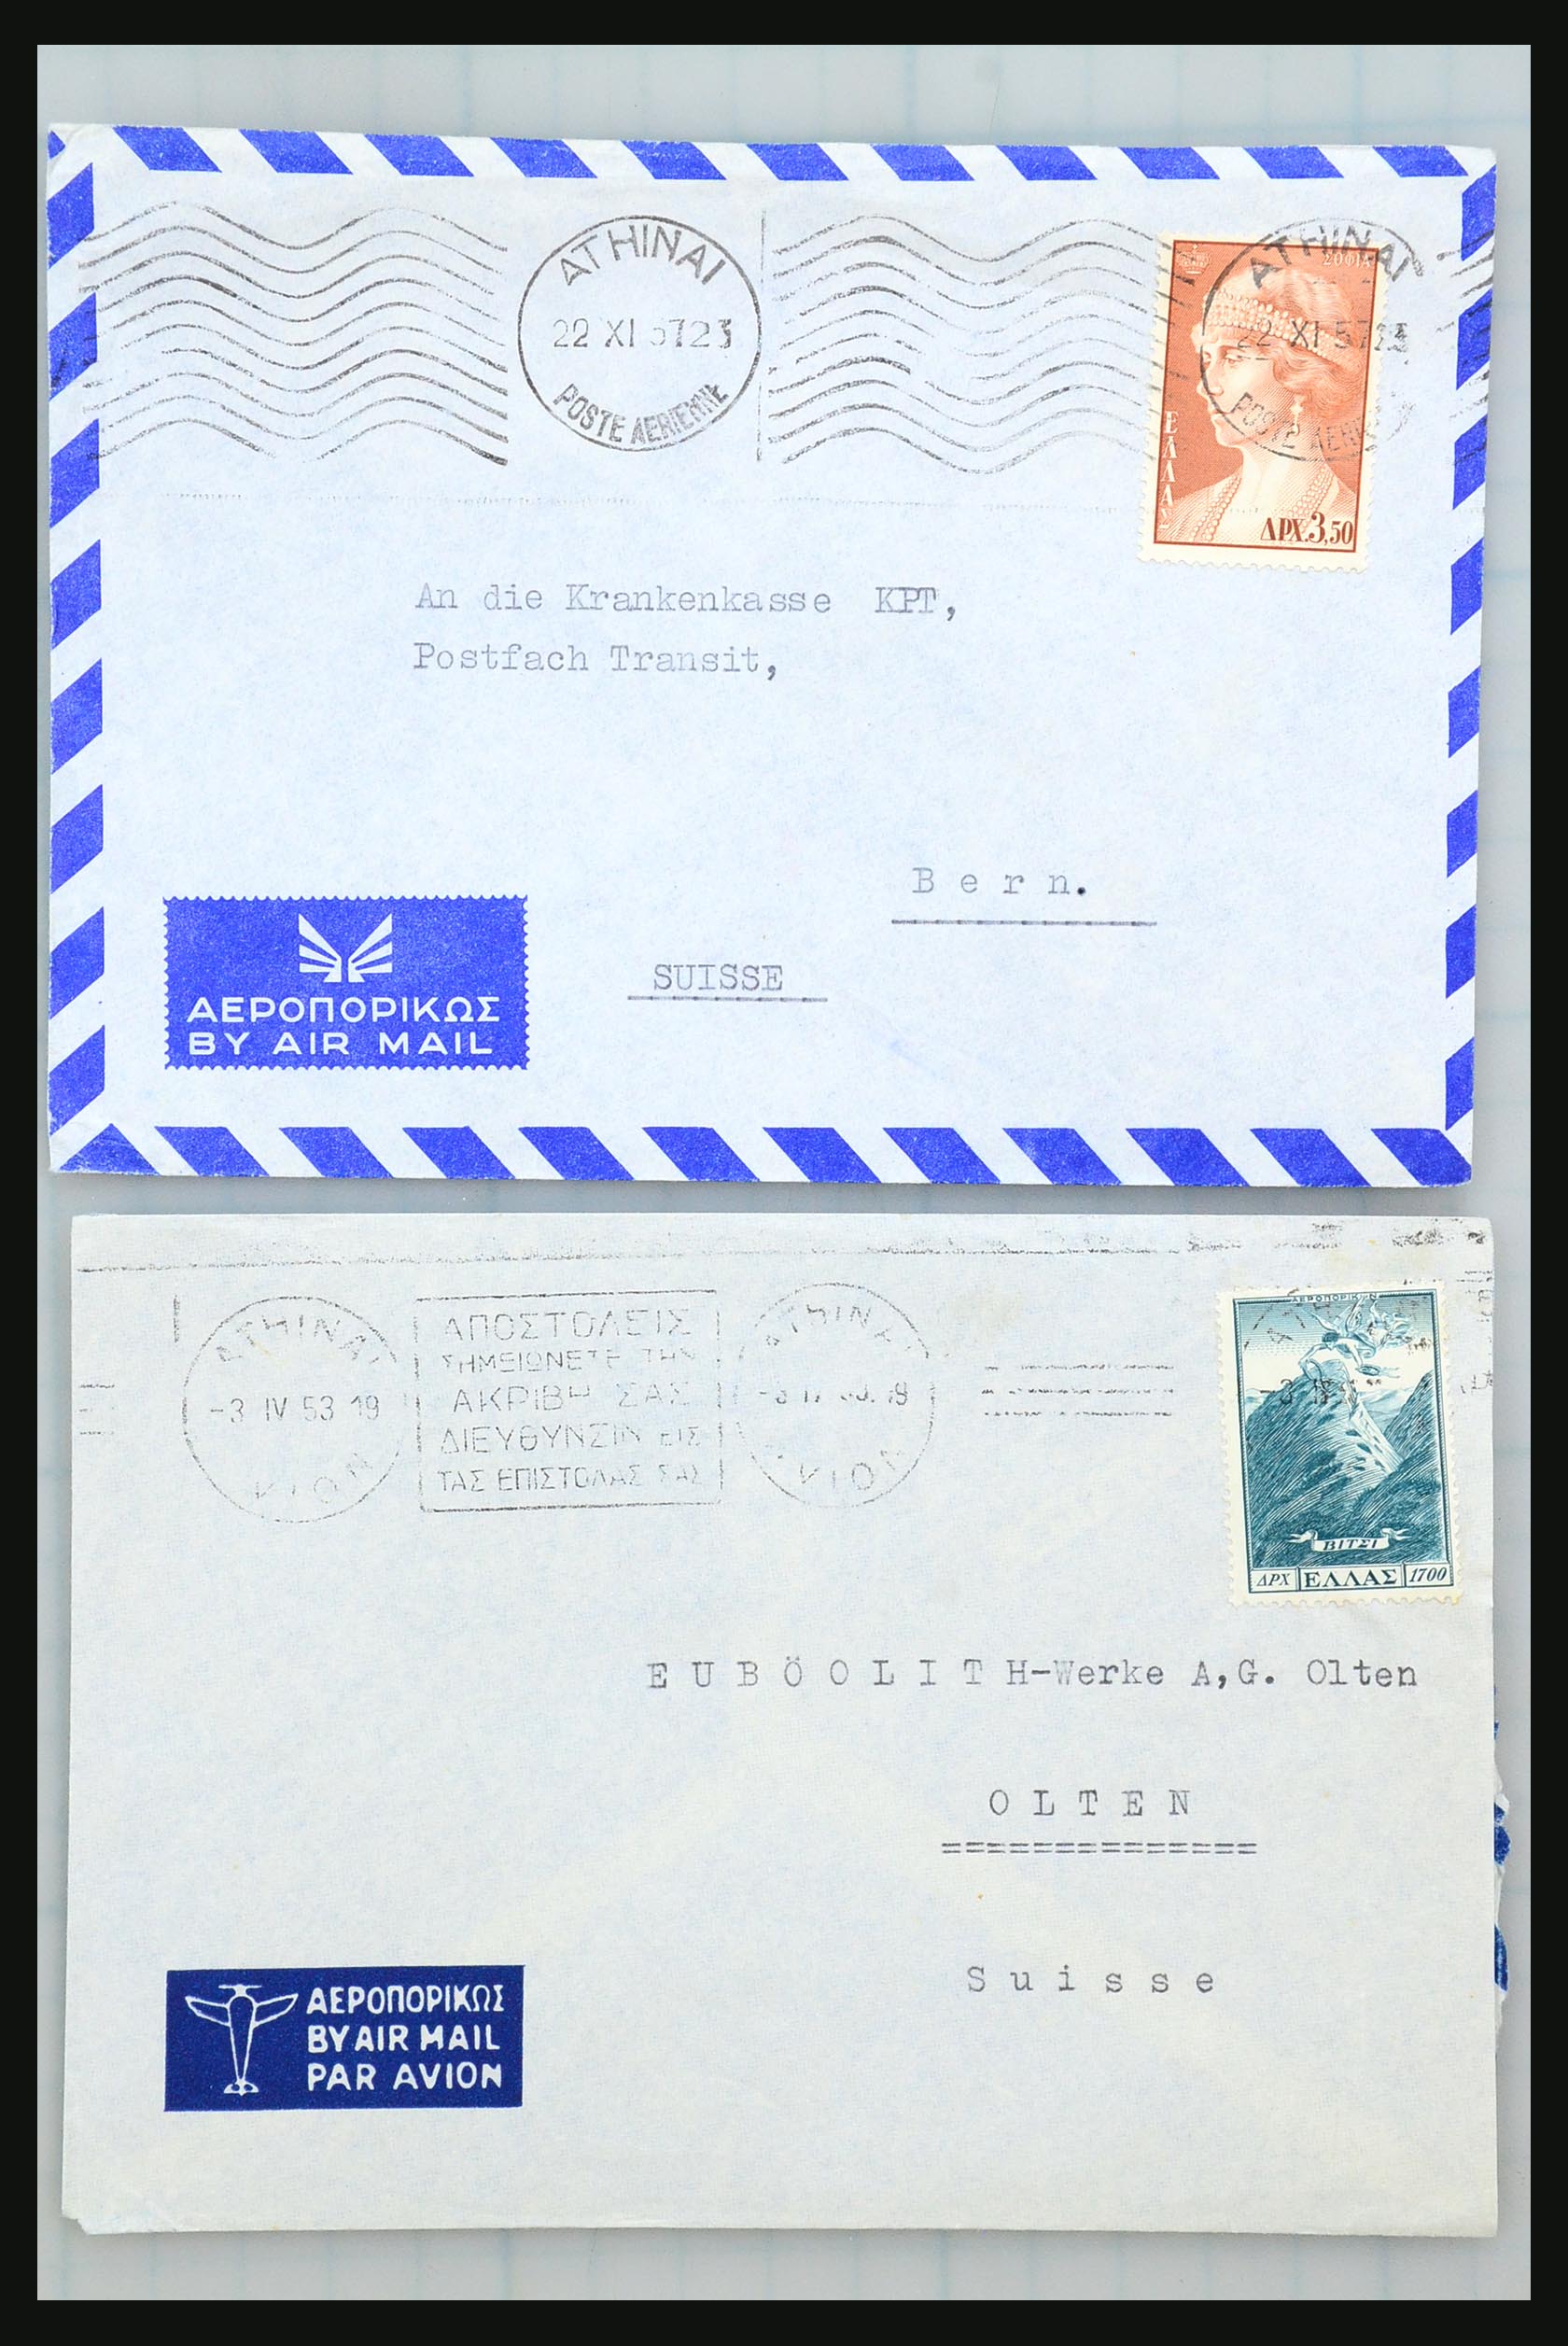 31358 114 - 31358 Portugal/Luxemburg/Griekenland brieven 1880-1960.